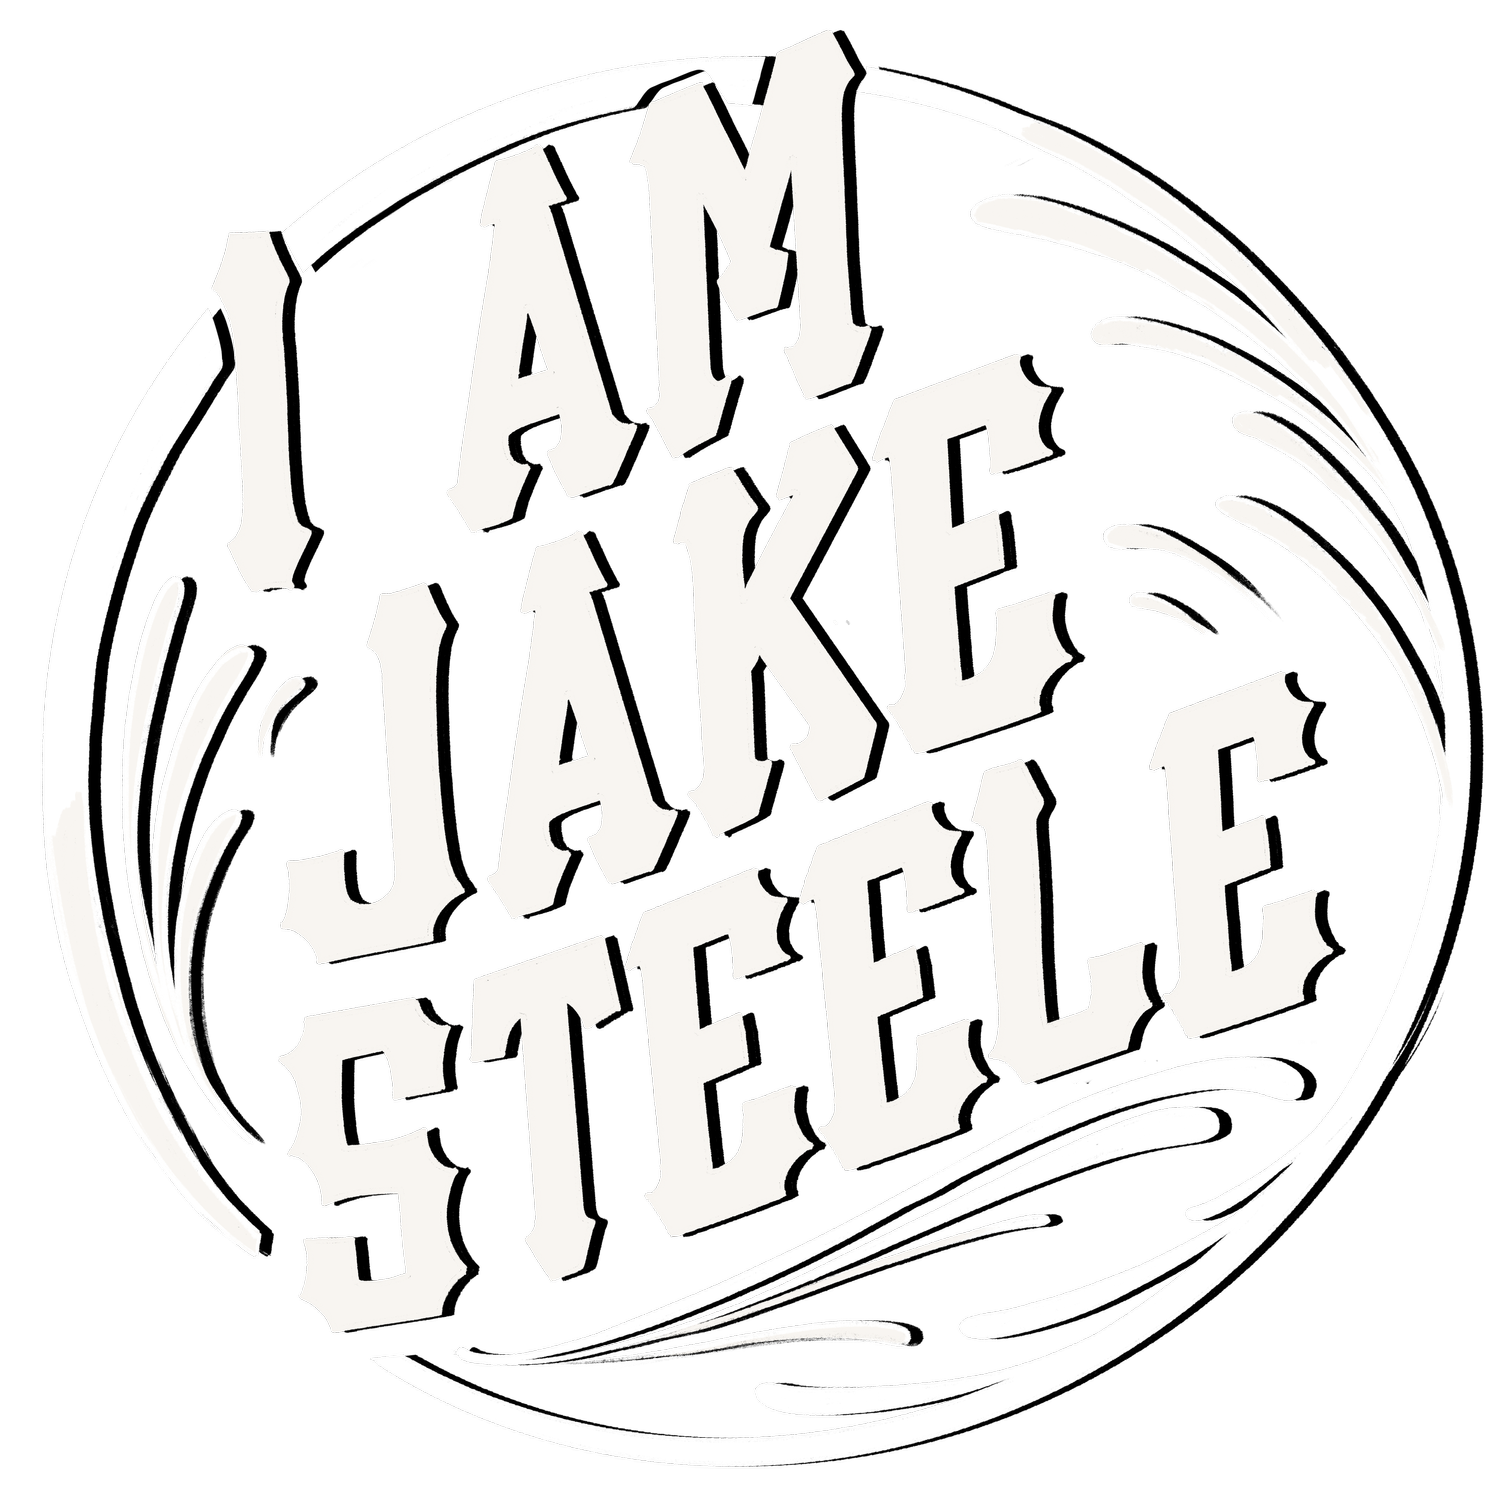 I am Jake Steele